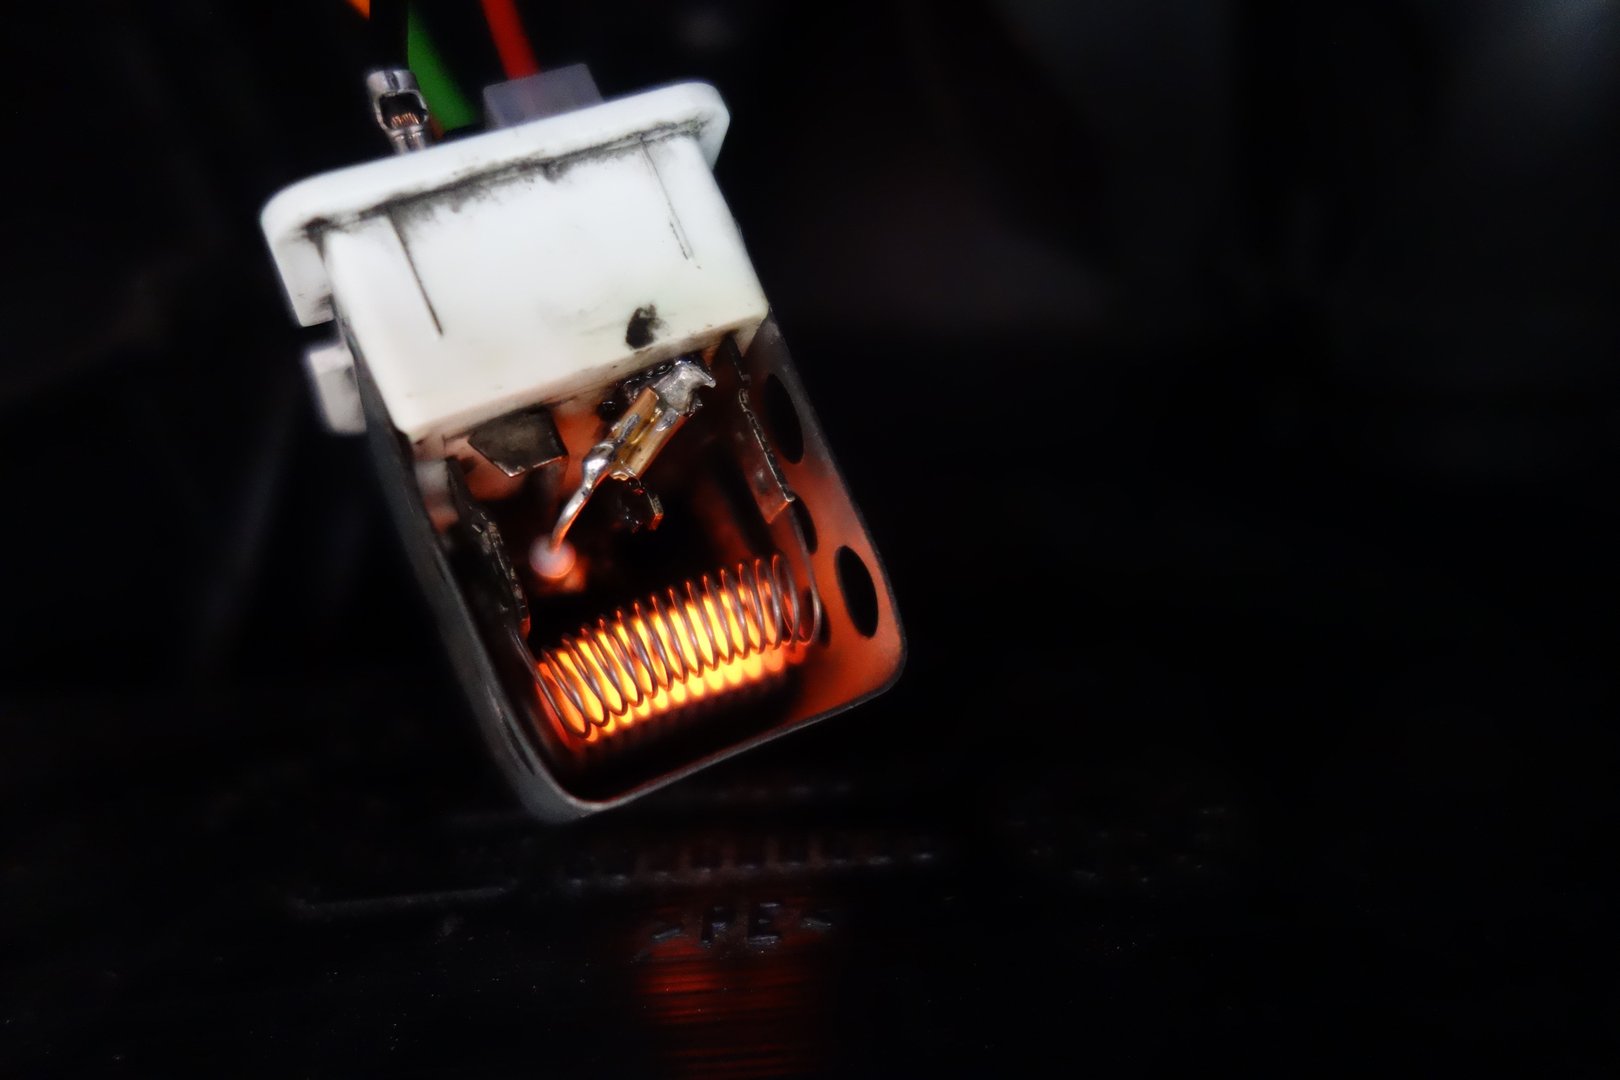 Hamburger Apple mow Blower Motor Resistor Thermal Fuse Service DIY – Emilian Robert Vicol